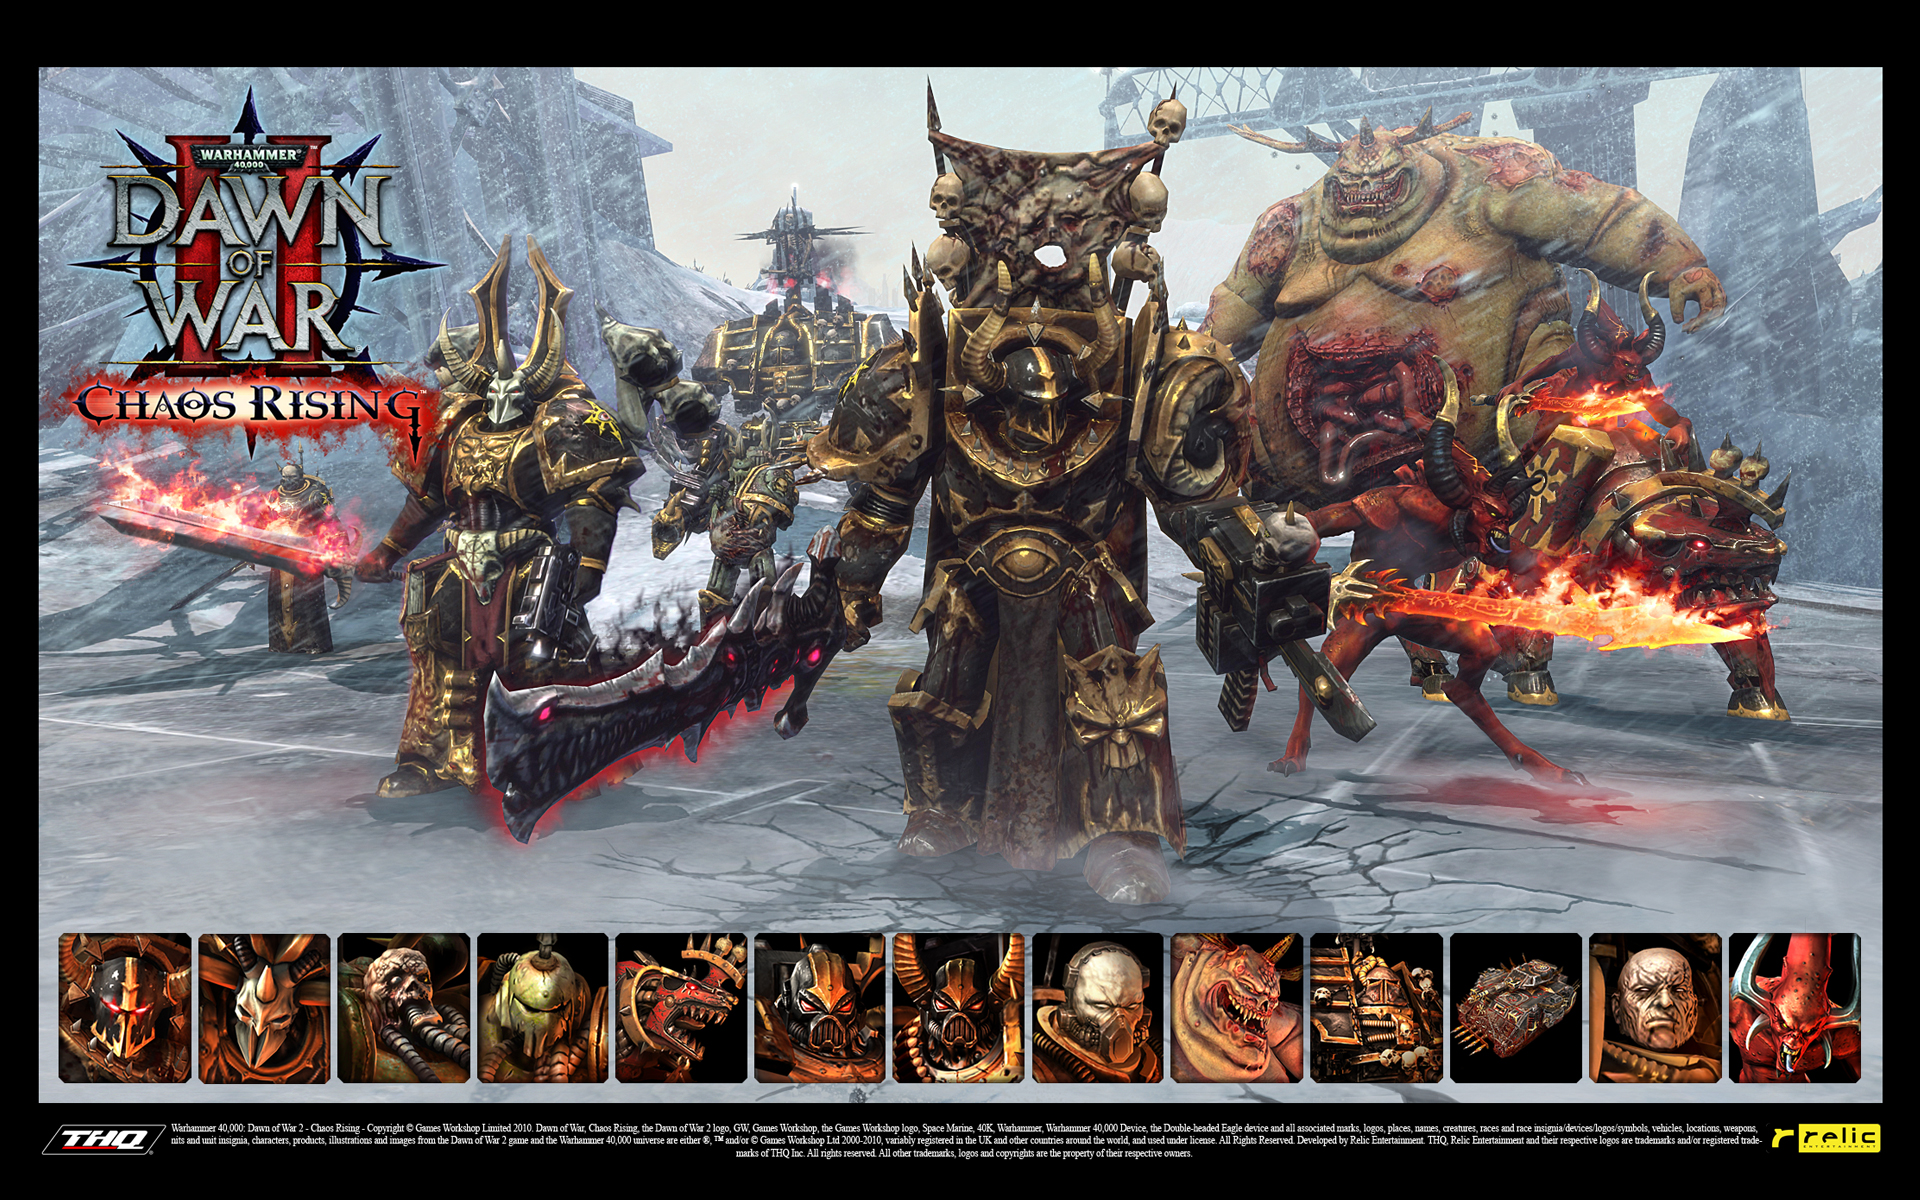 Wallpaper 1 Wallpaper from Warhammer 40,000 Dawn of War